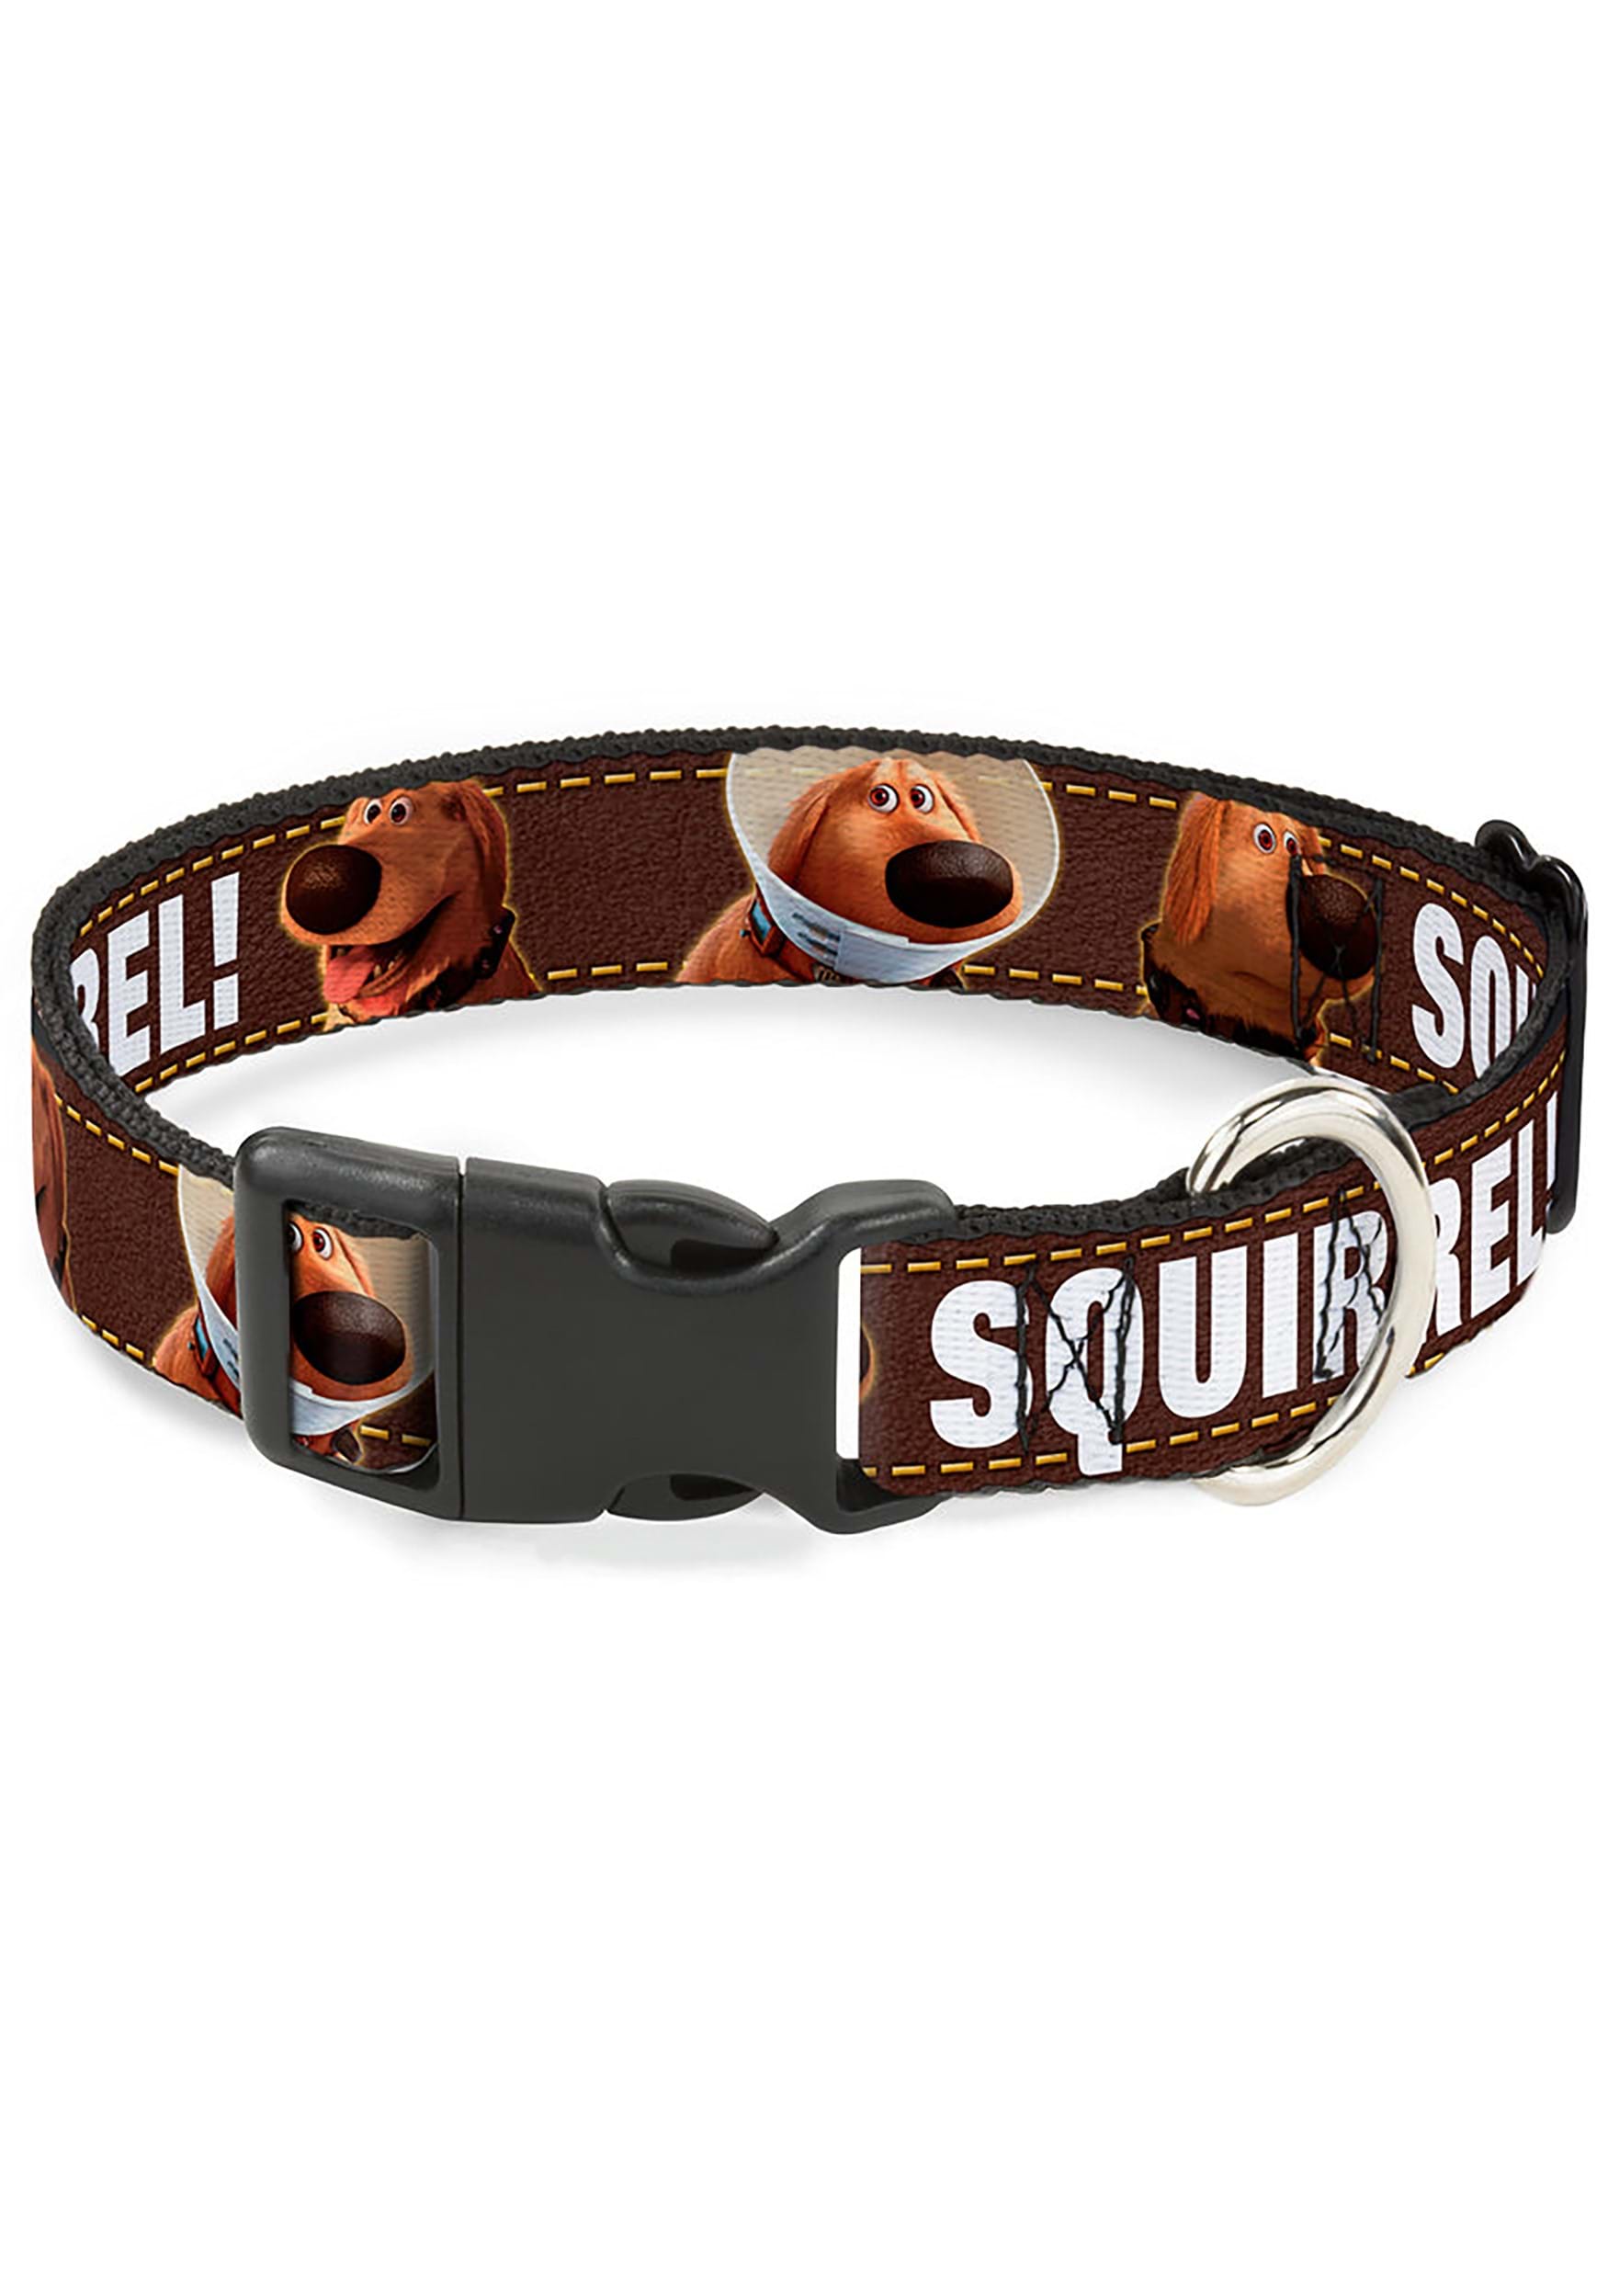 Dug 3 Poses Squirrel! Plastic Clip Pet Collar